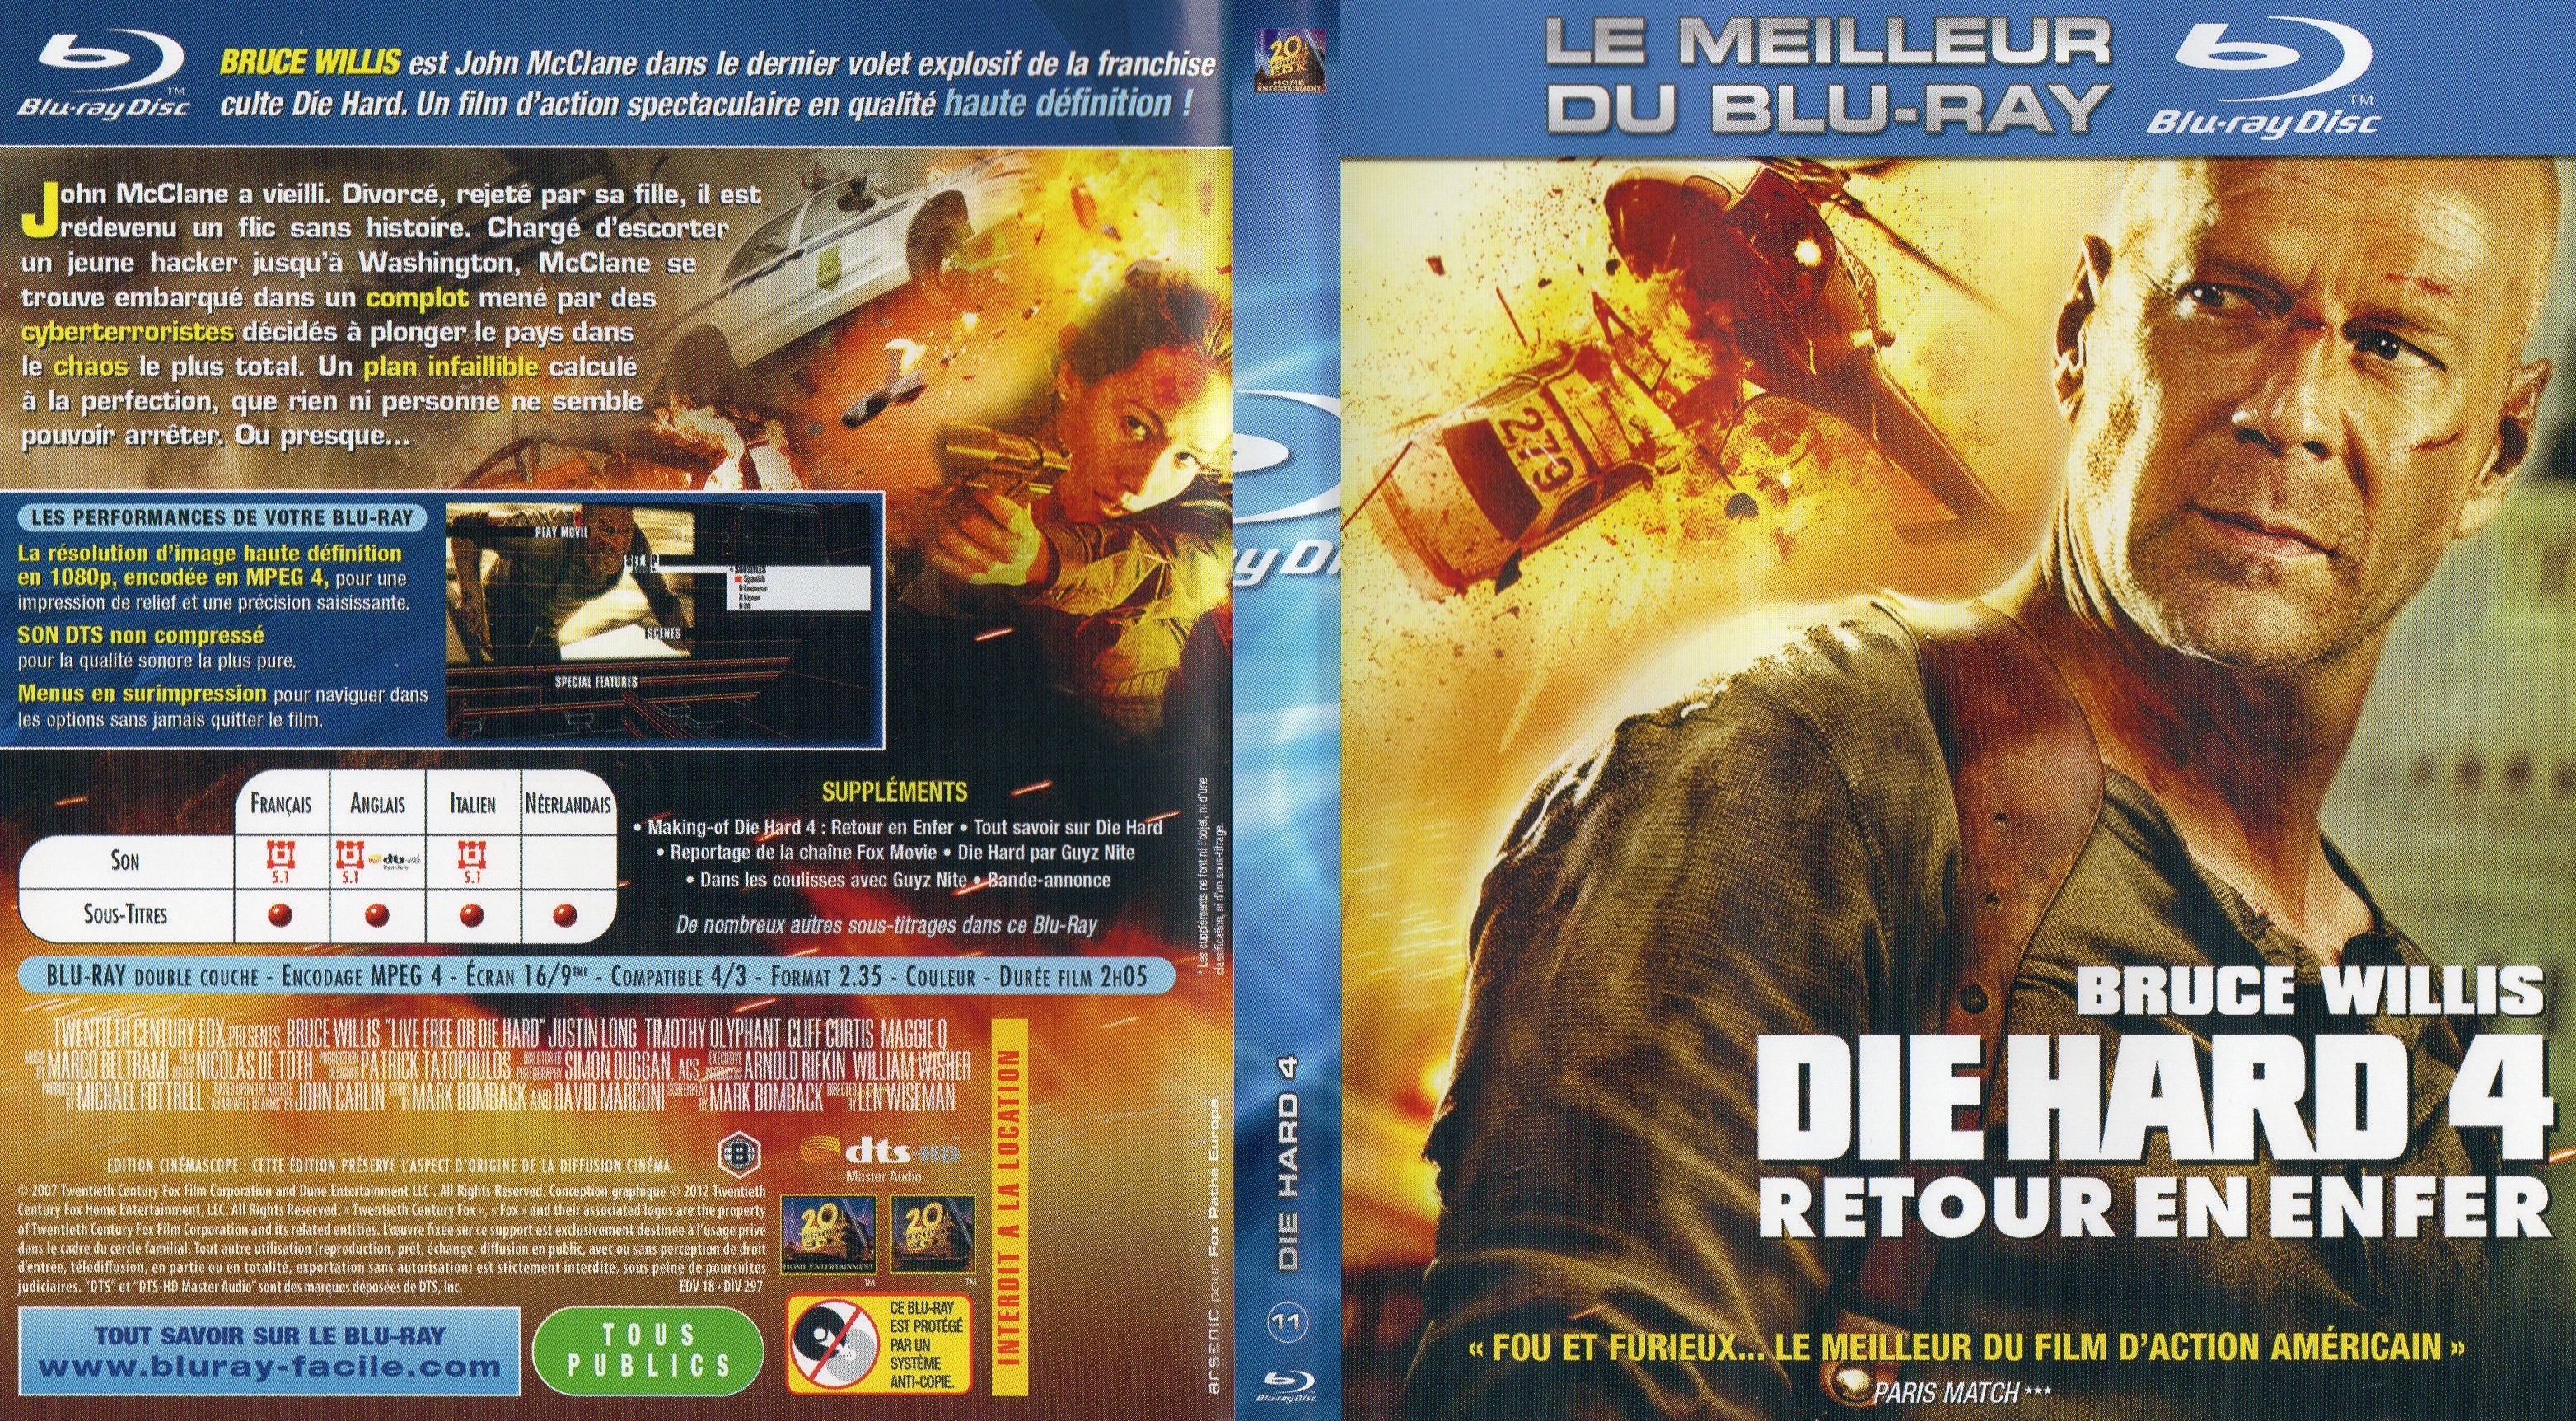 Jaquette DVD Die hard 4 - Retour en enfer (BLU-RAY) v2